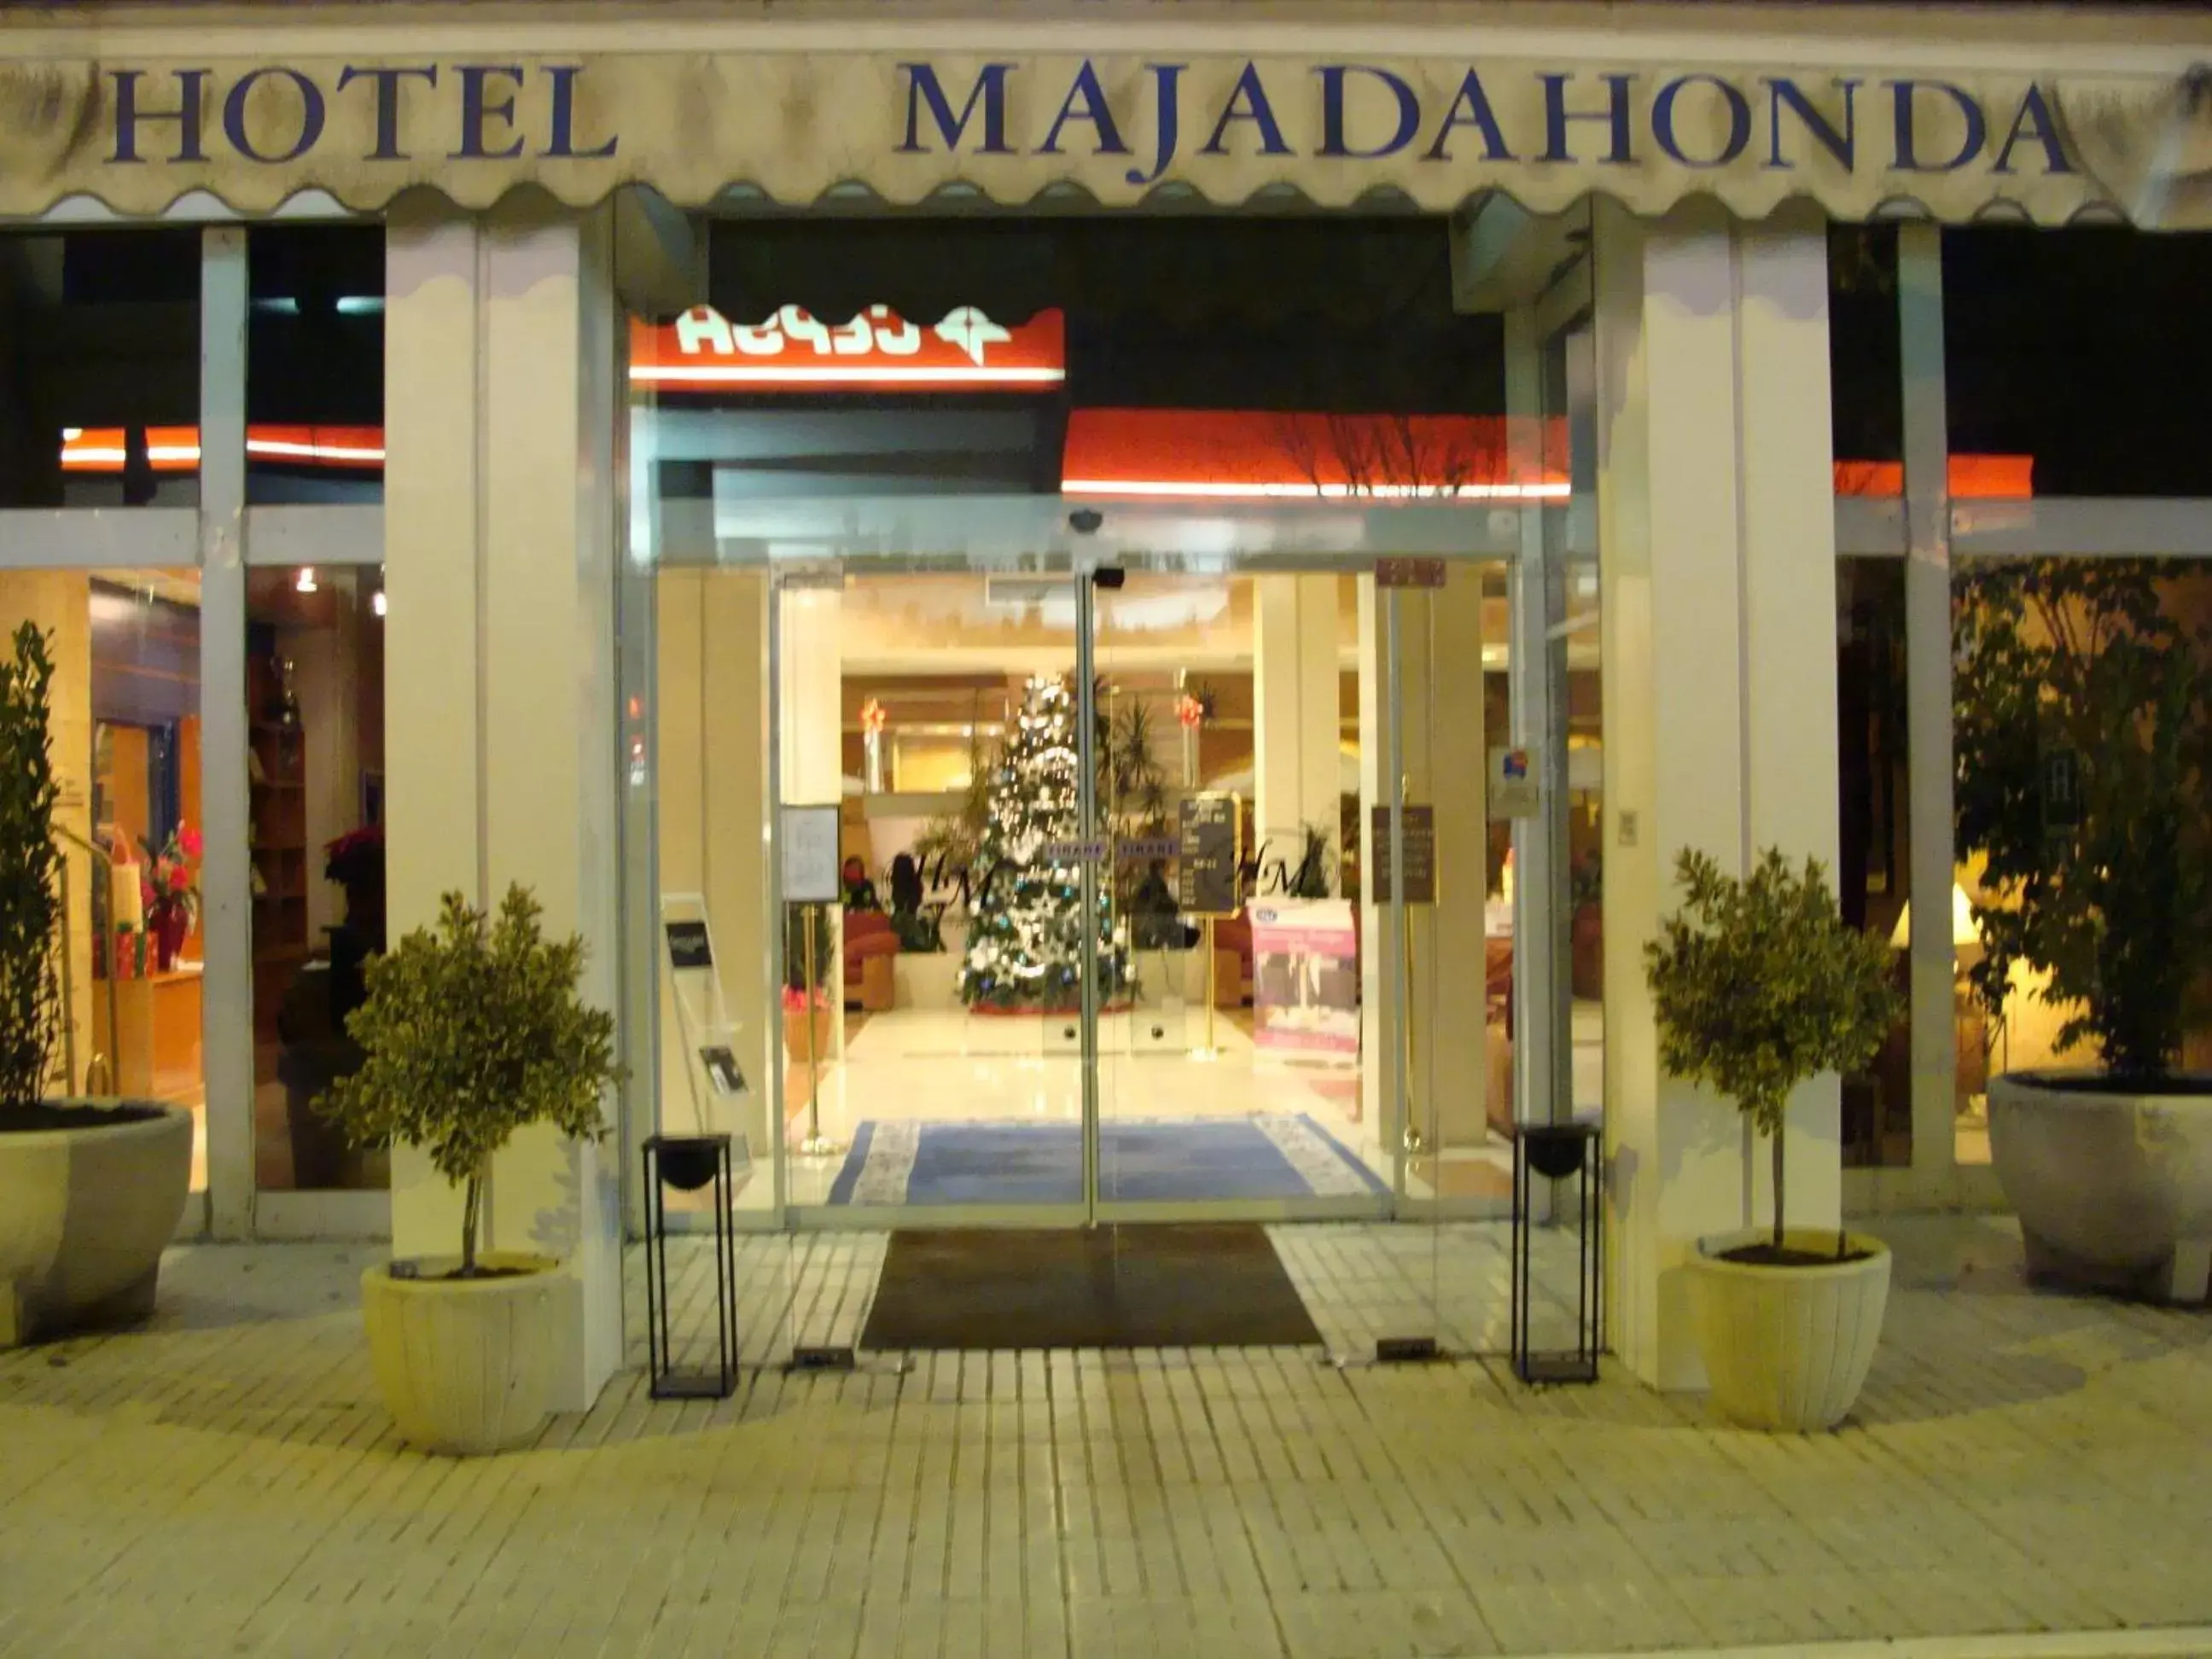 Facade/entrance in Hotel Majadahonda